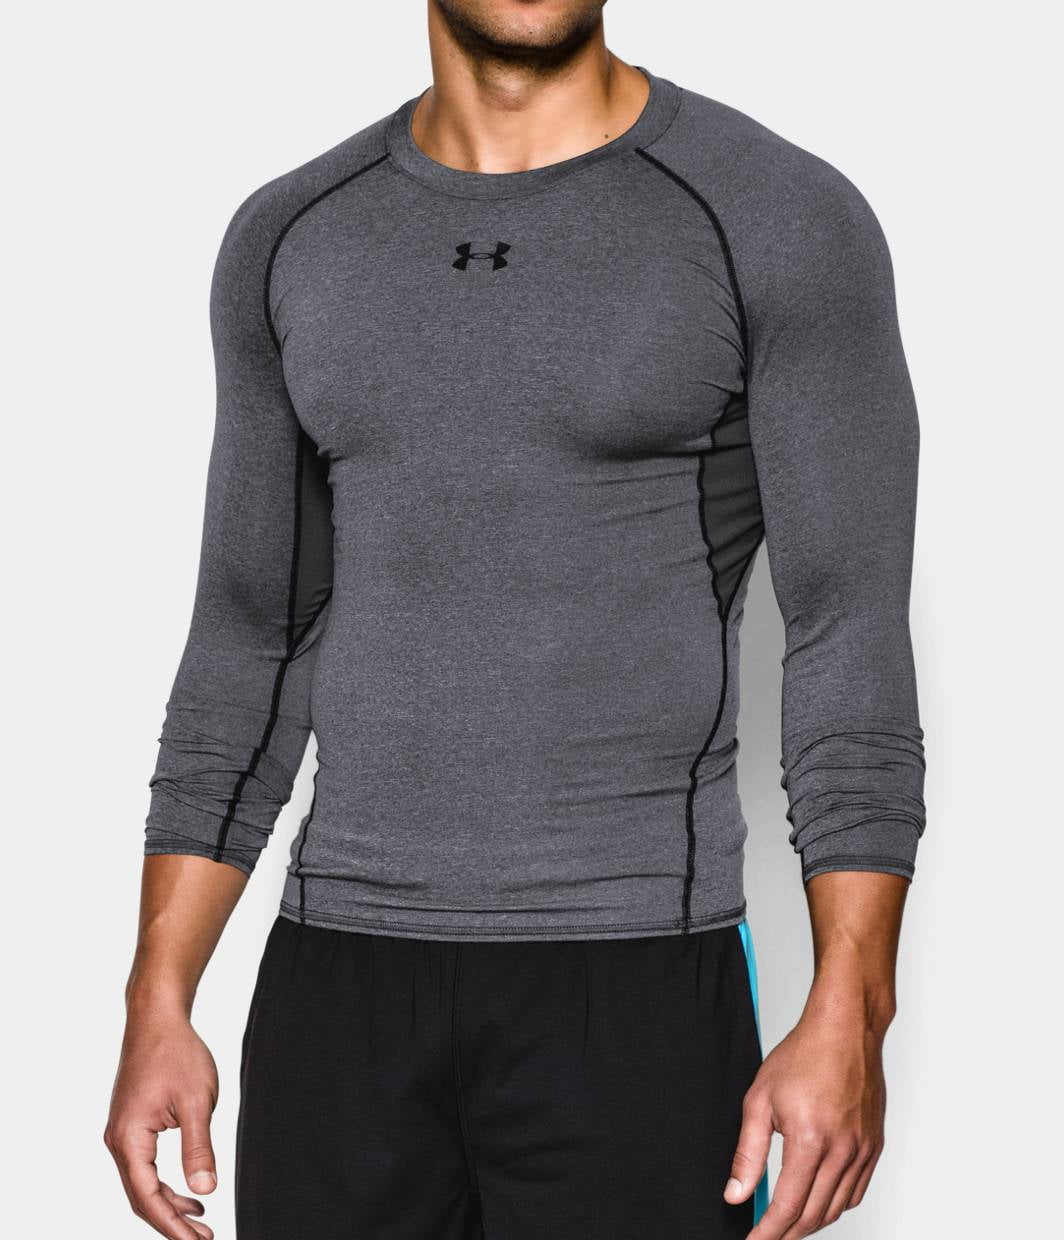  UA HG Armour Novelty SS, Gray - men's short sleeve  compression shirt - UNDER ARMOUR - 31.87 € - outdoorové oblečení a vybavení  shop